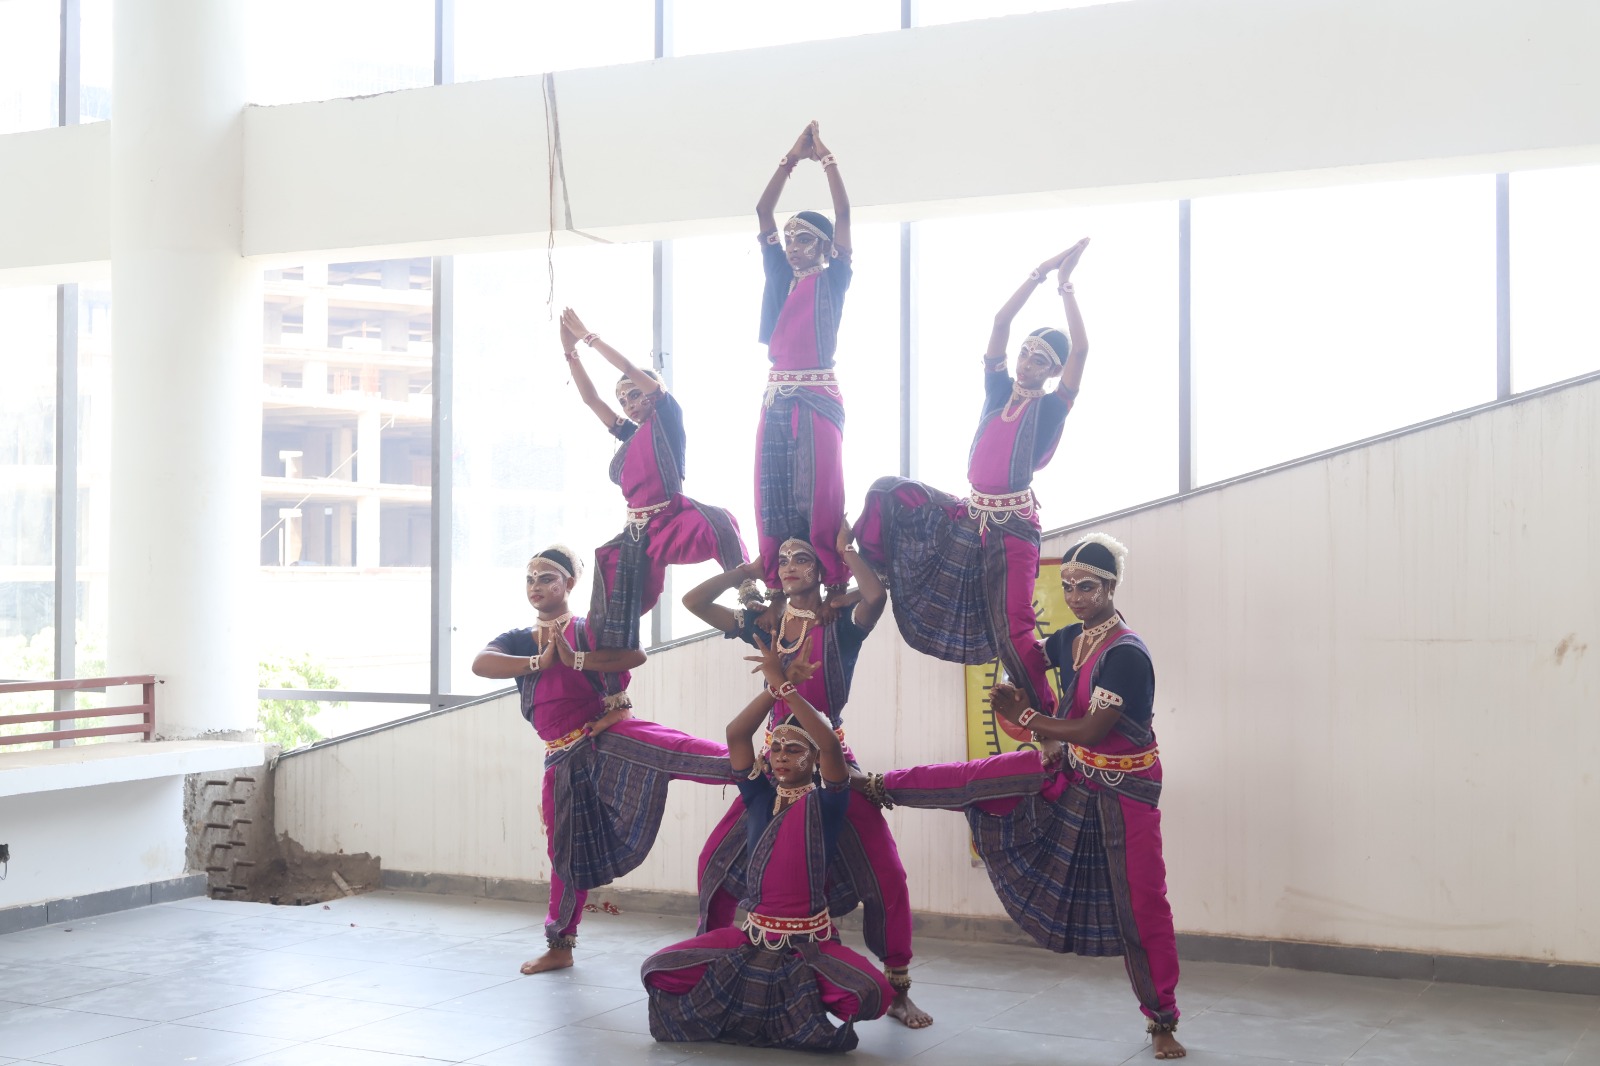 सिमेज कॉलेज में आयोजित हुआ उड़ीसा के प्रसिद्द ‘गोटी पुअ’ नृत्य का कार्यक्रम